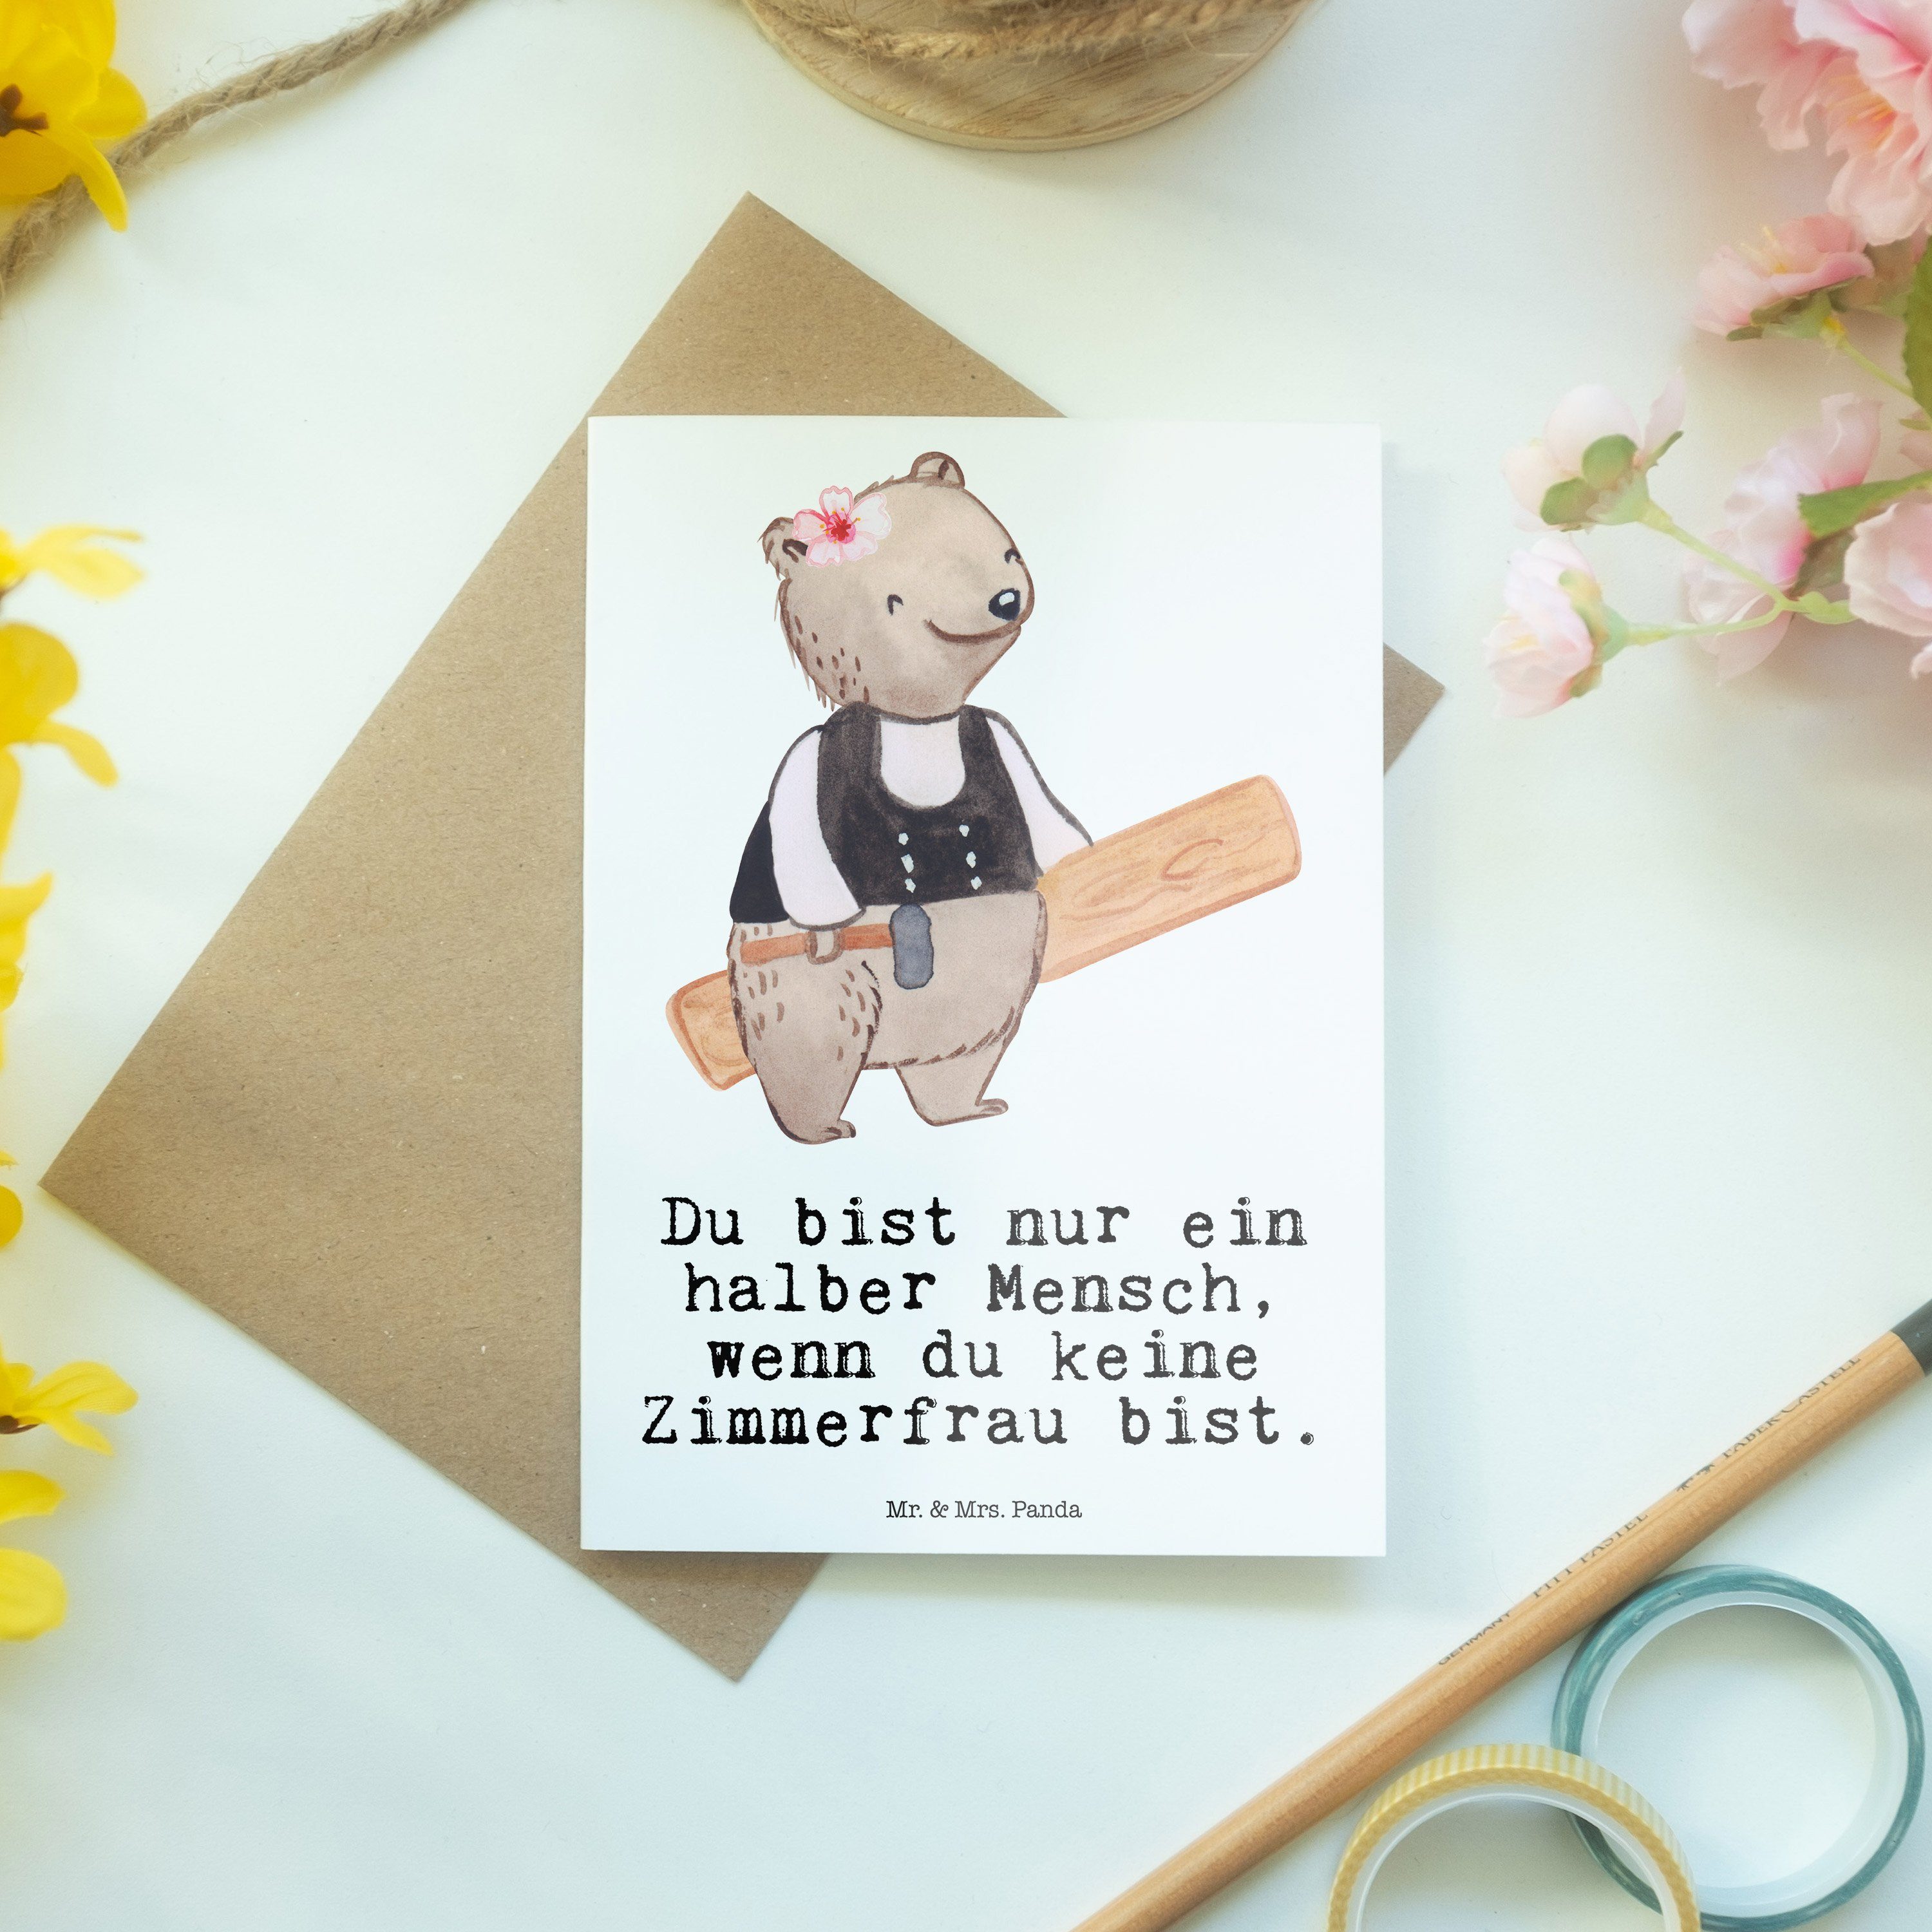 Mr. & Mrs. Panda mit - Schenken, Herz Geschenk, Zimmerfrau - F Karte, Weiß Grußkarte Klappkarte